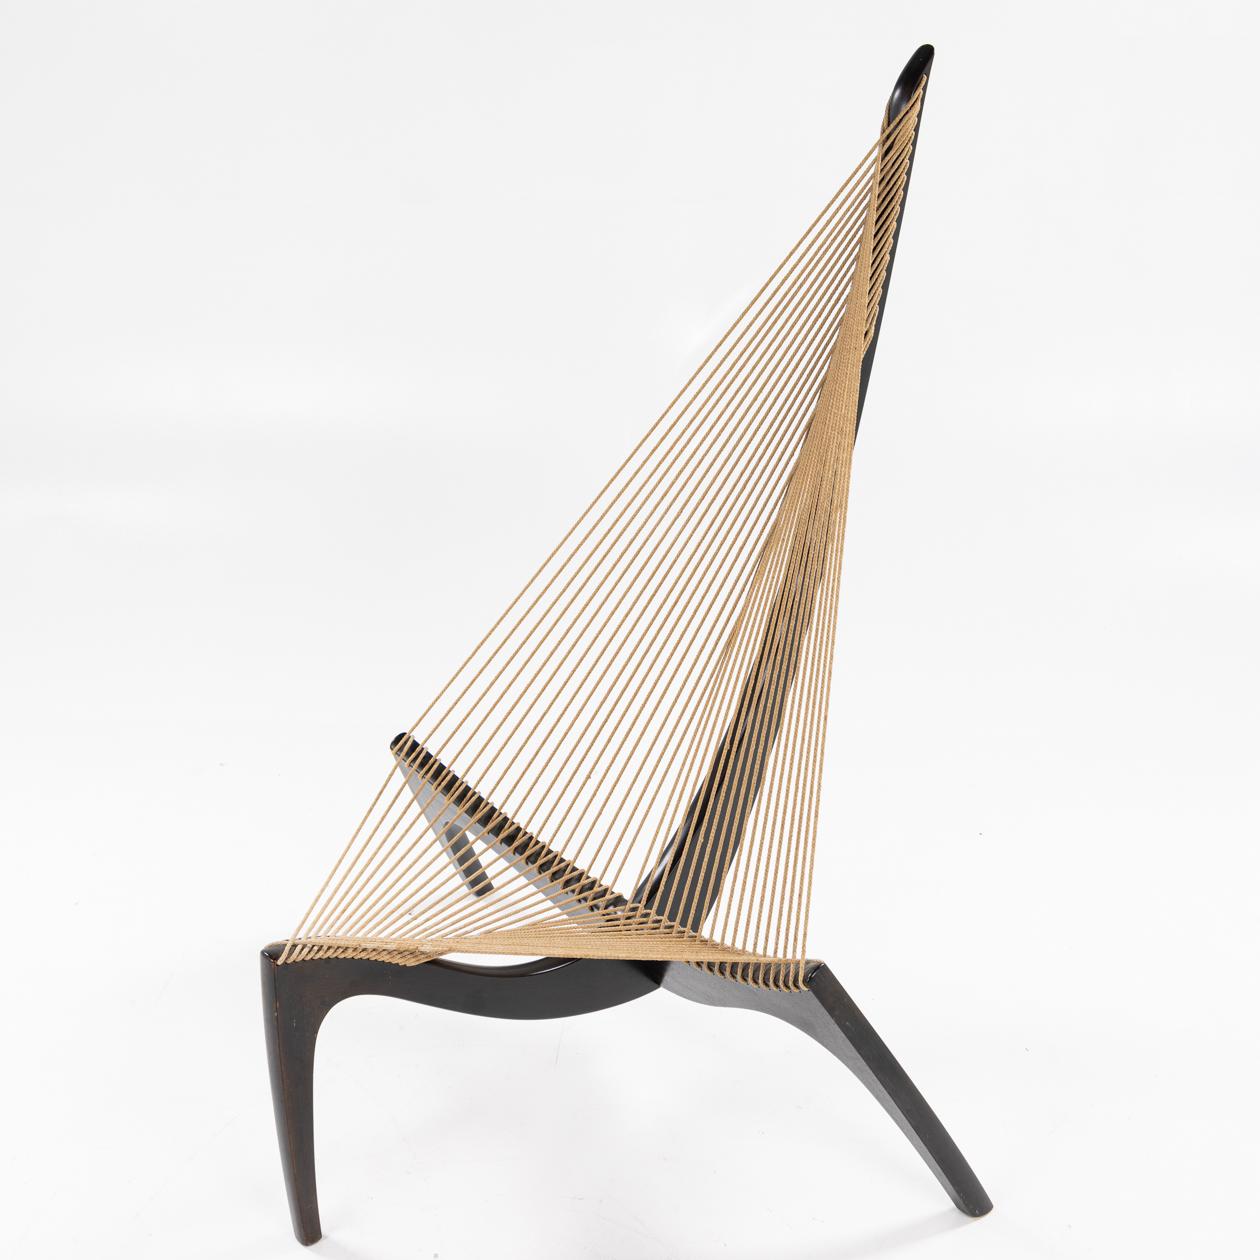 Blackened Harp chair by Jørgen Høvelskov